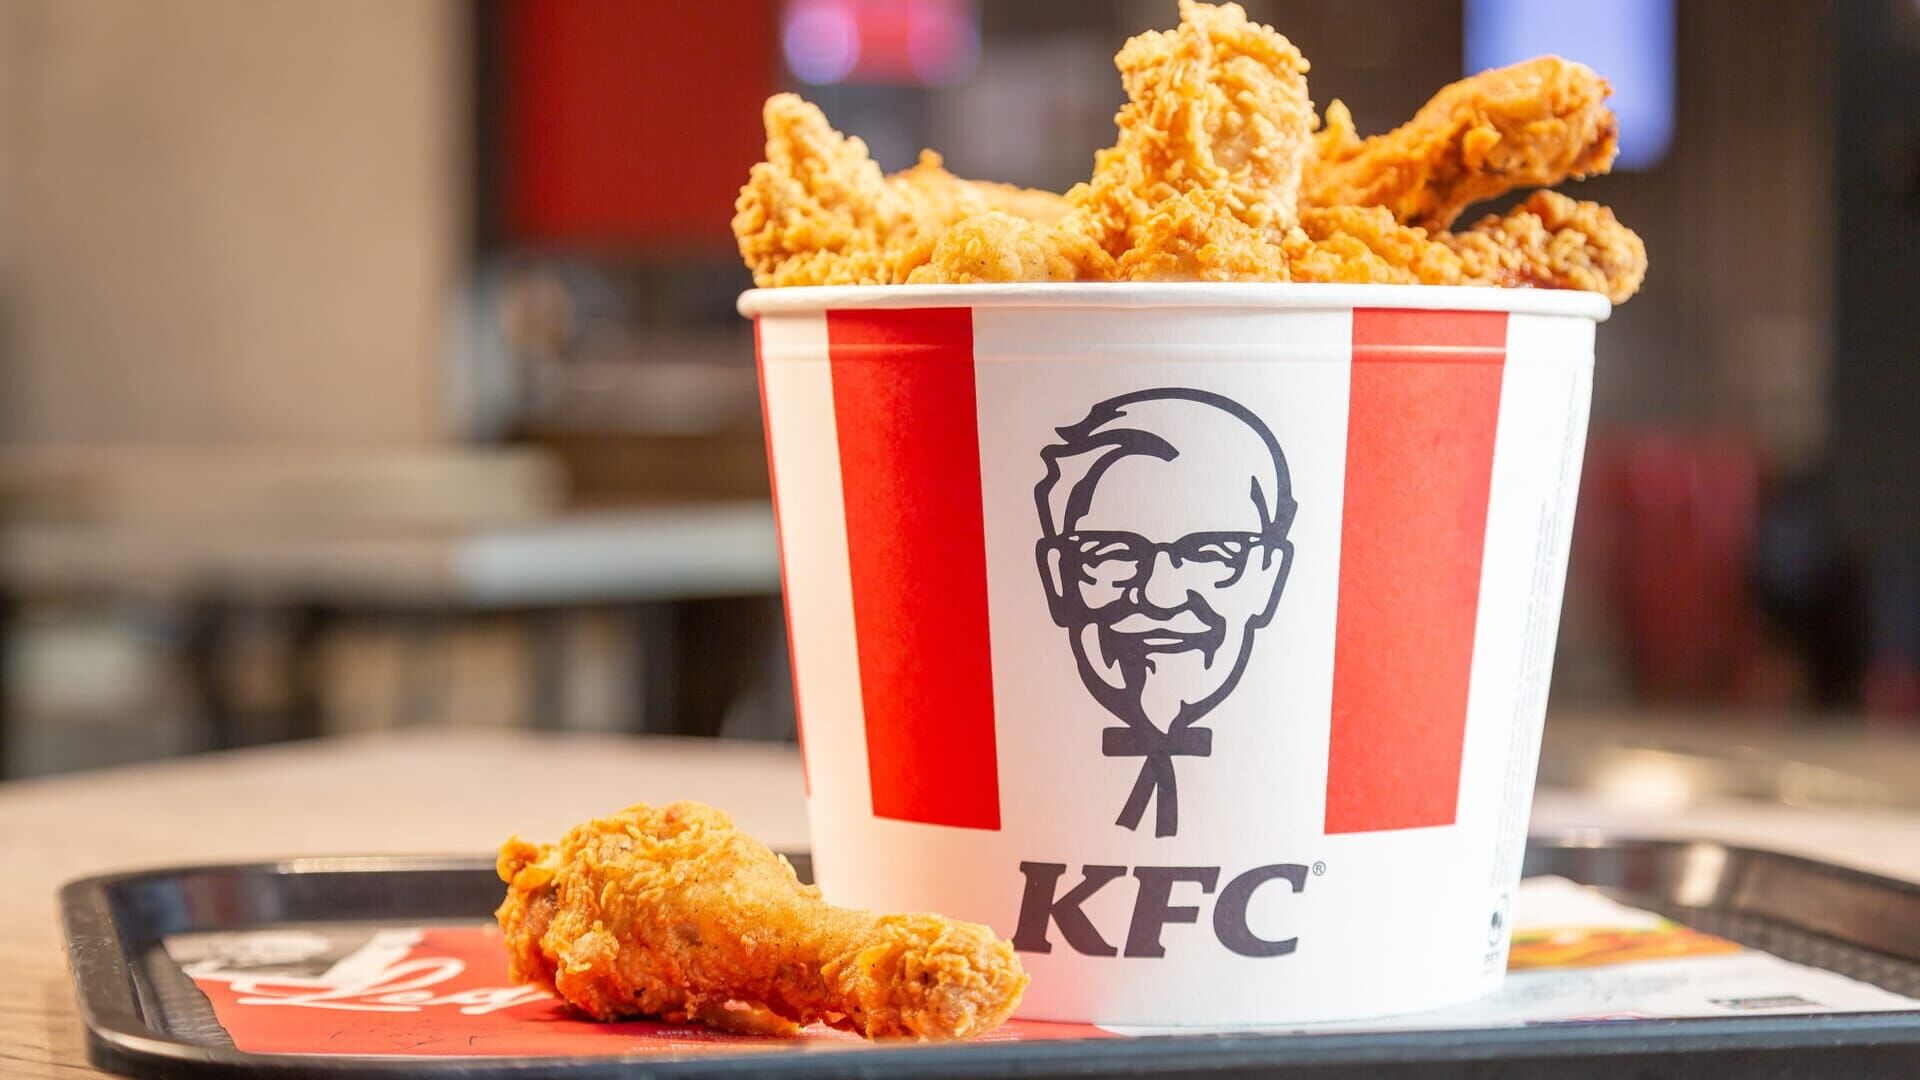 ZDFbesseresser: Die Wahrheit über KFC